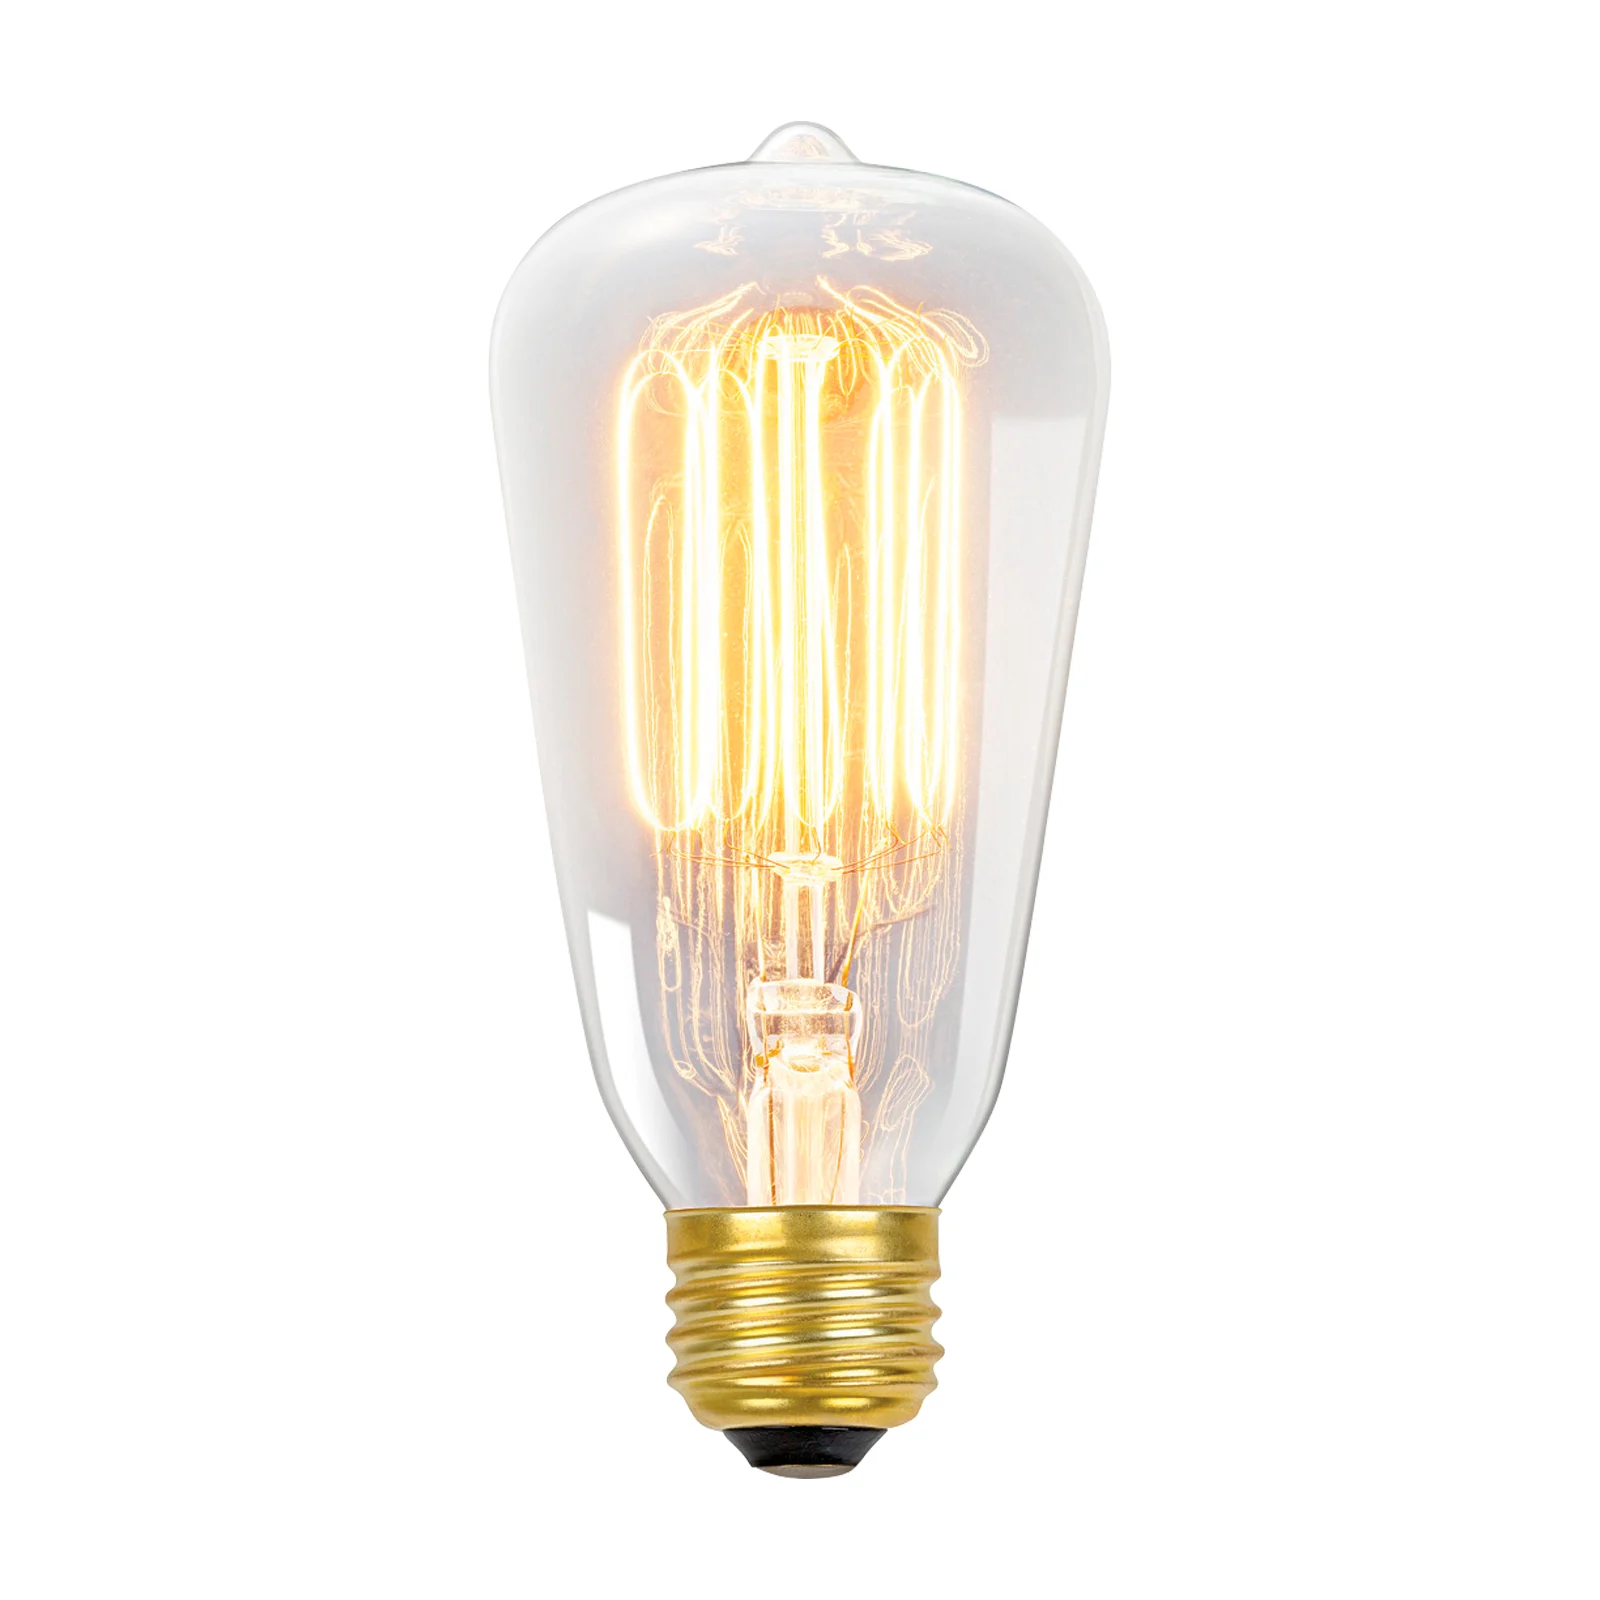 An incandescent light bulb 